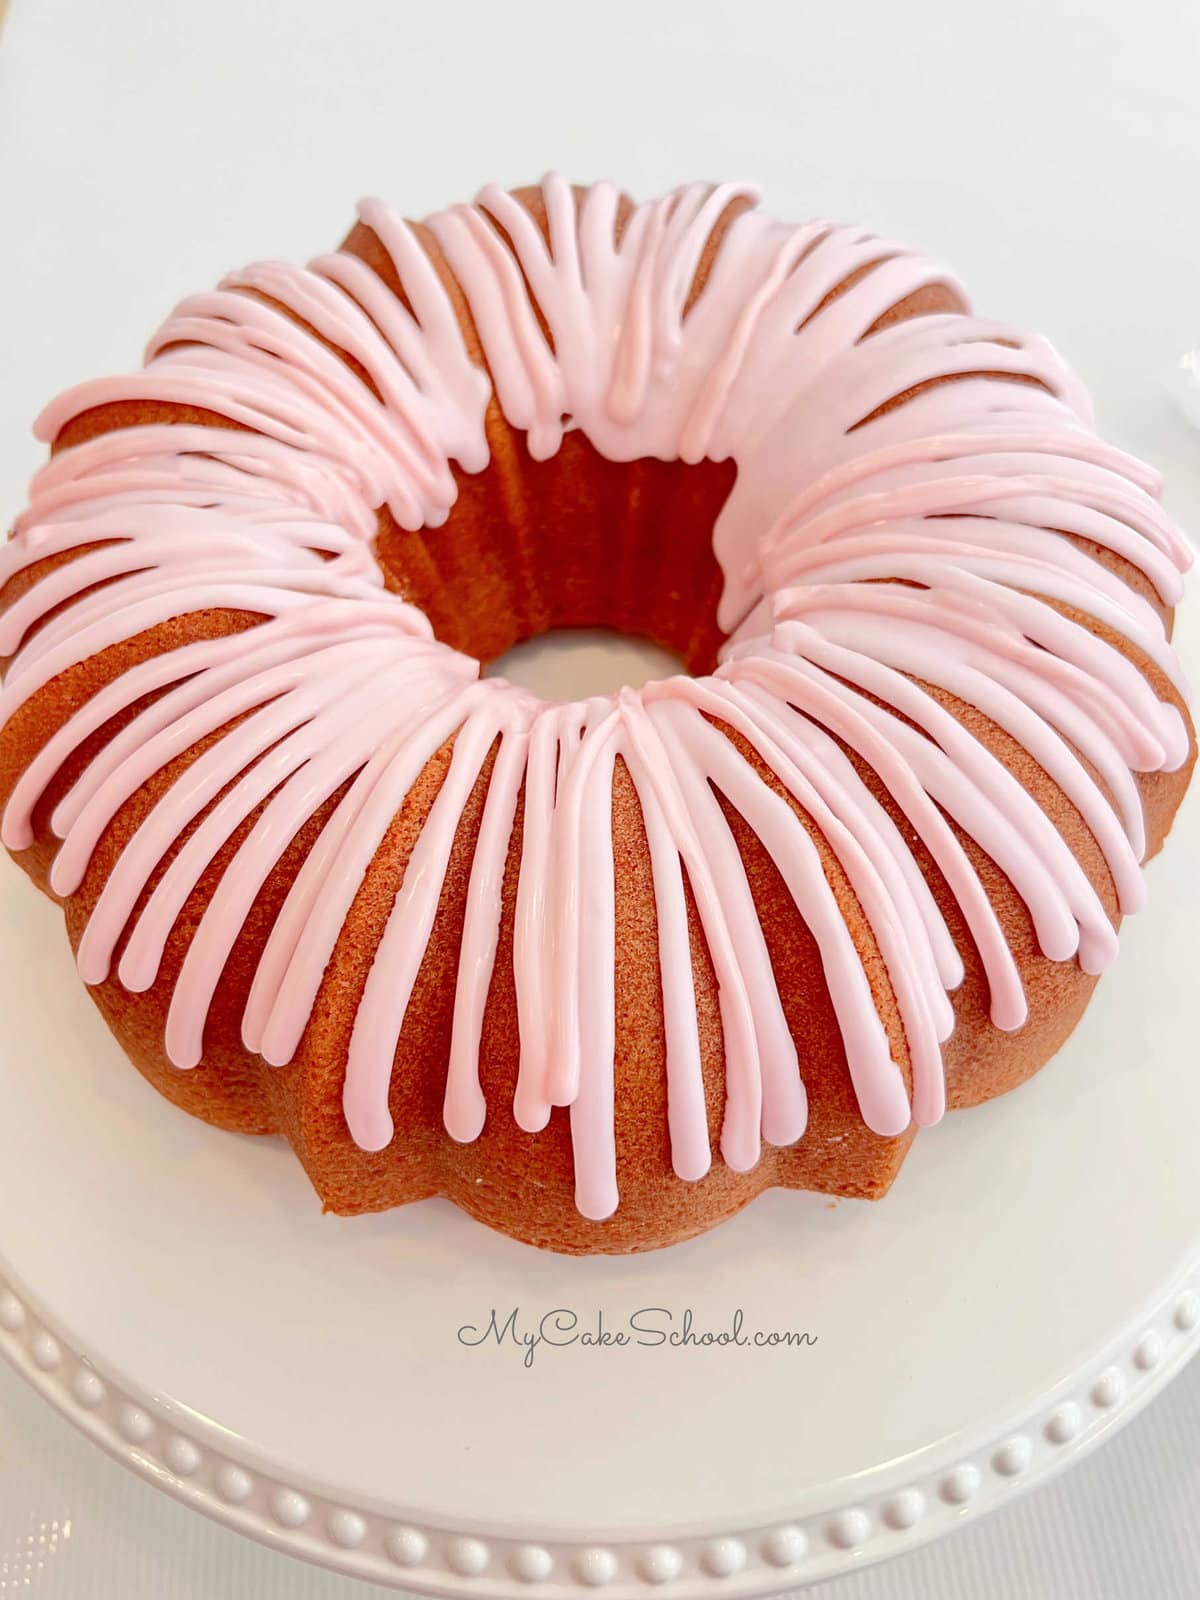 Strawberry bundt cake topped with strawberry glaze